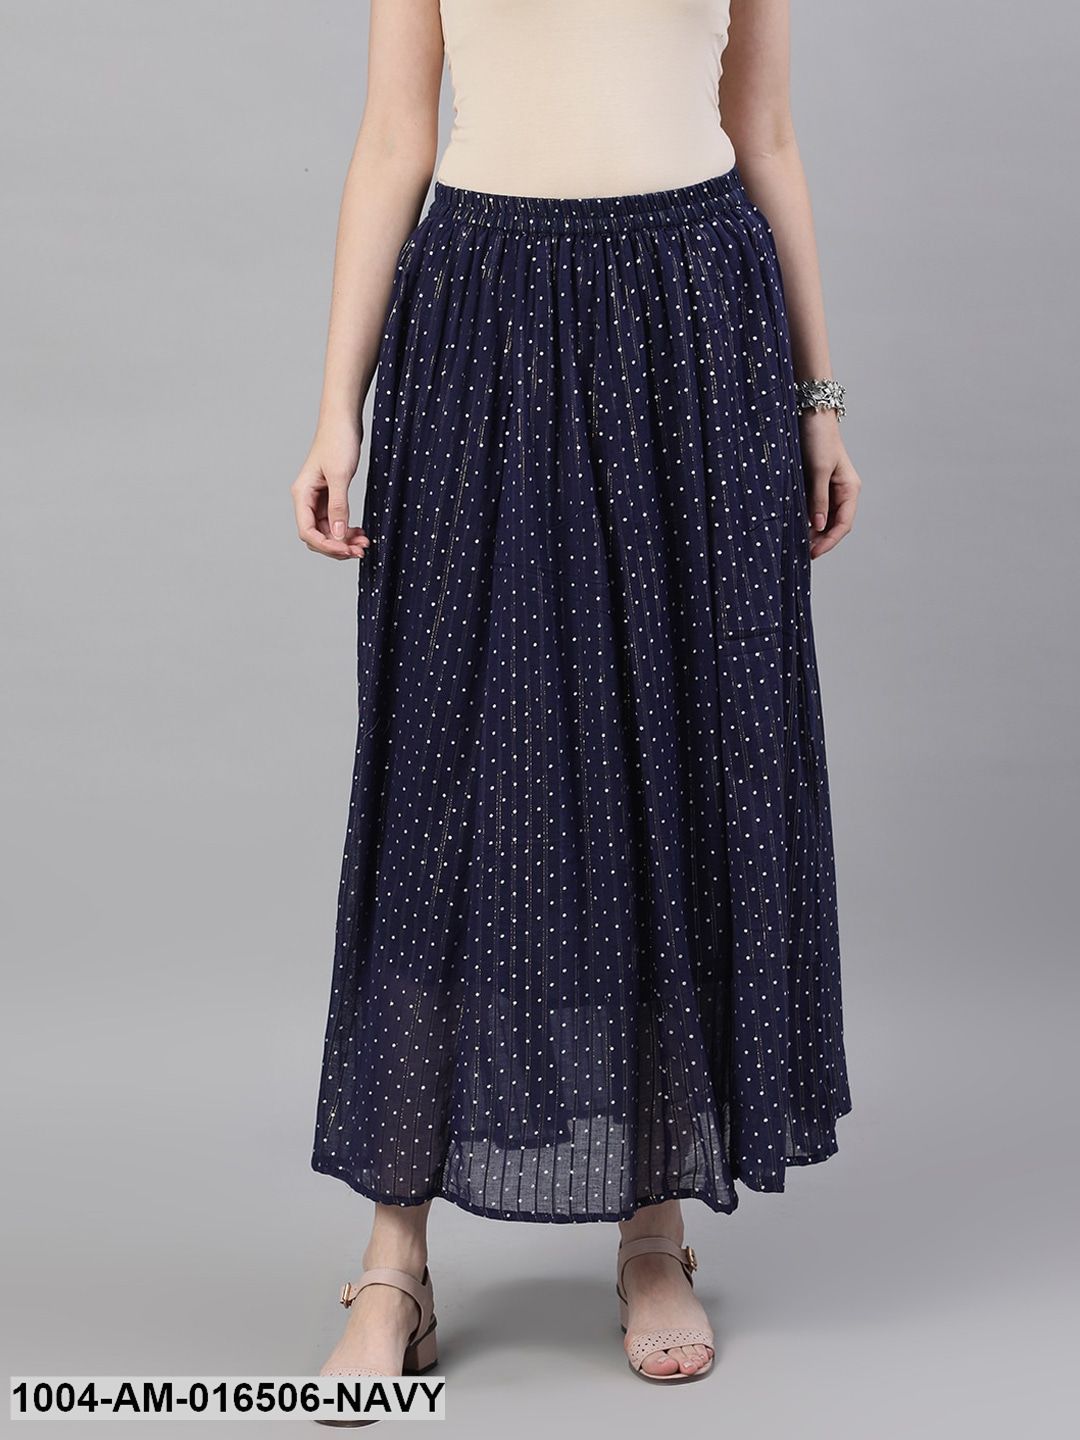 Navy blue polka dot printed maxi skirt